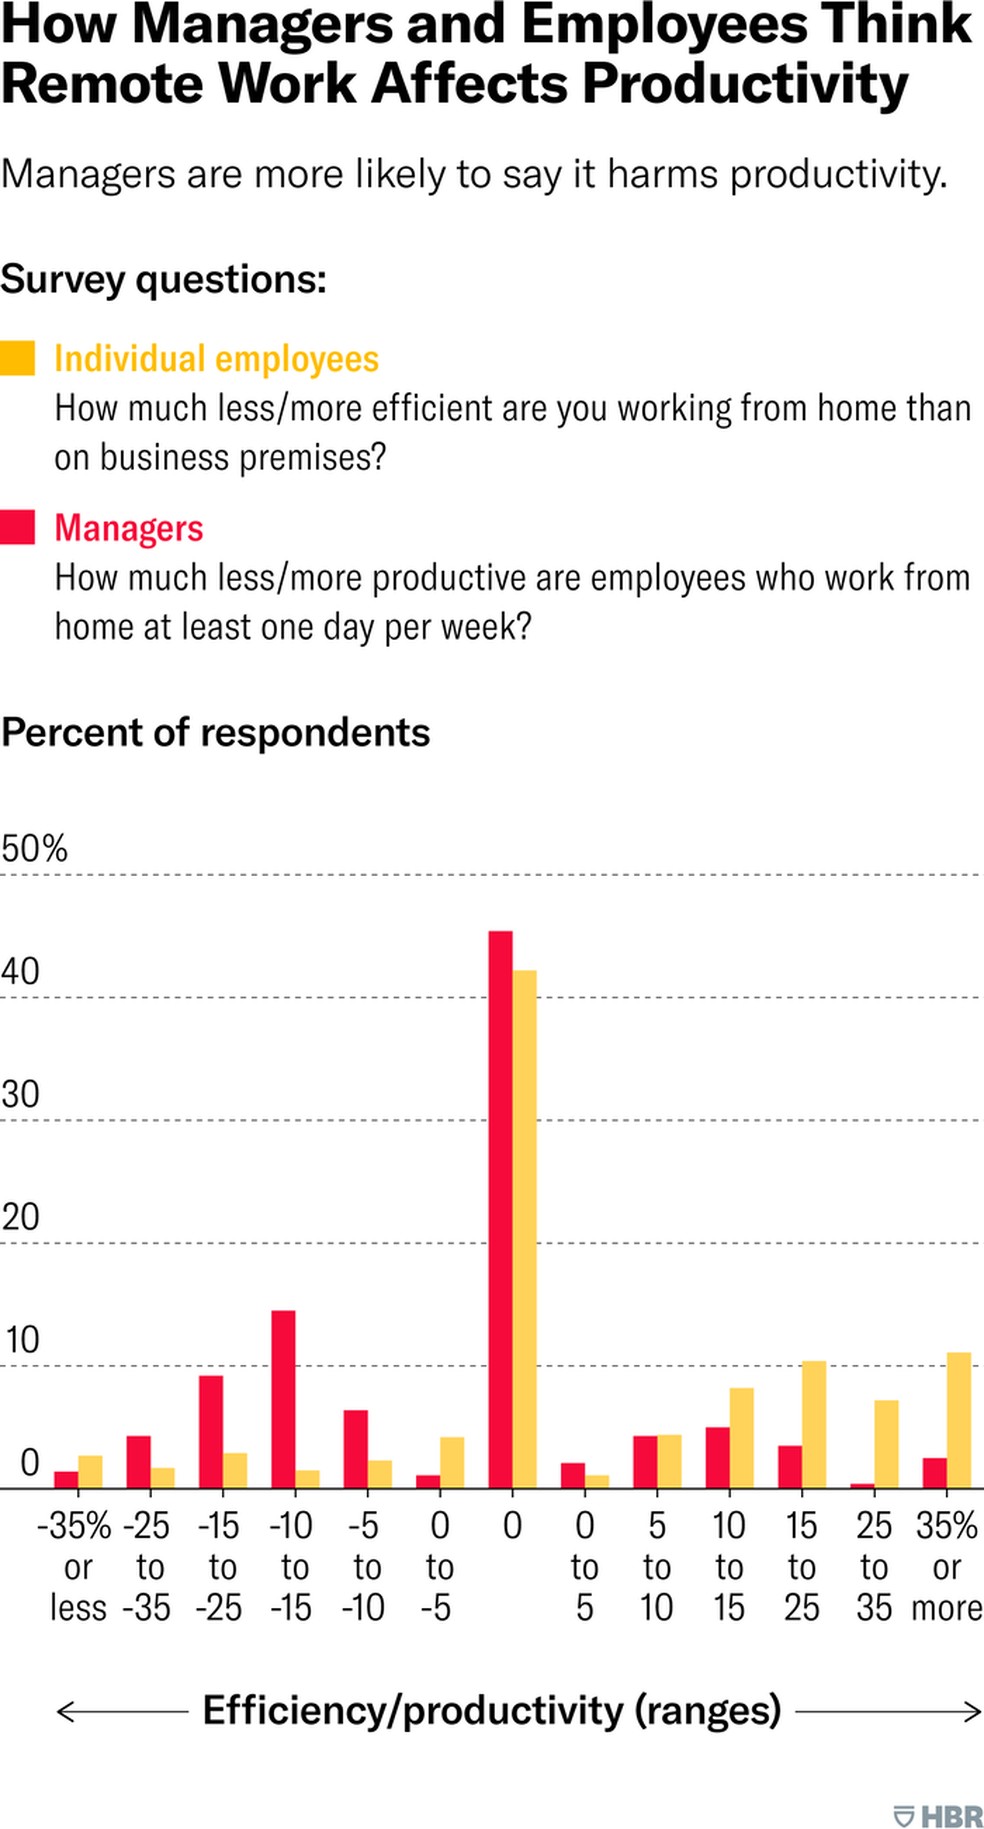 Pesquisa da Harvard Business Review: mais funcionários dizem que produtividade aumenta trabalhando de casa, e mais líderes dizem que ela diminui. — Foto: Divulgação